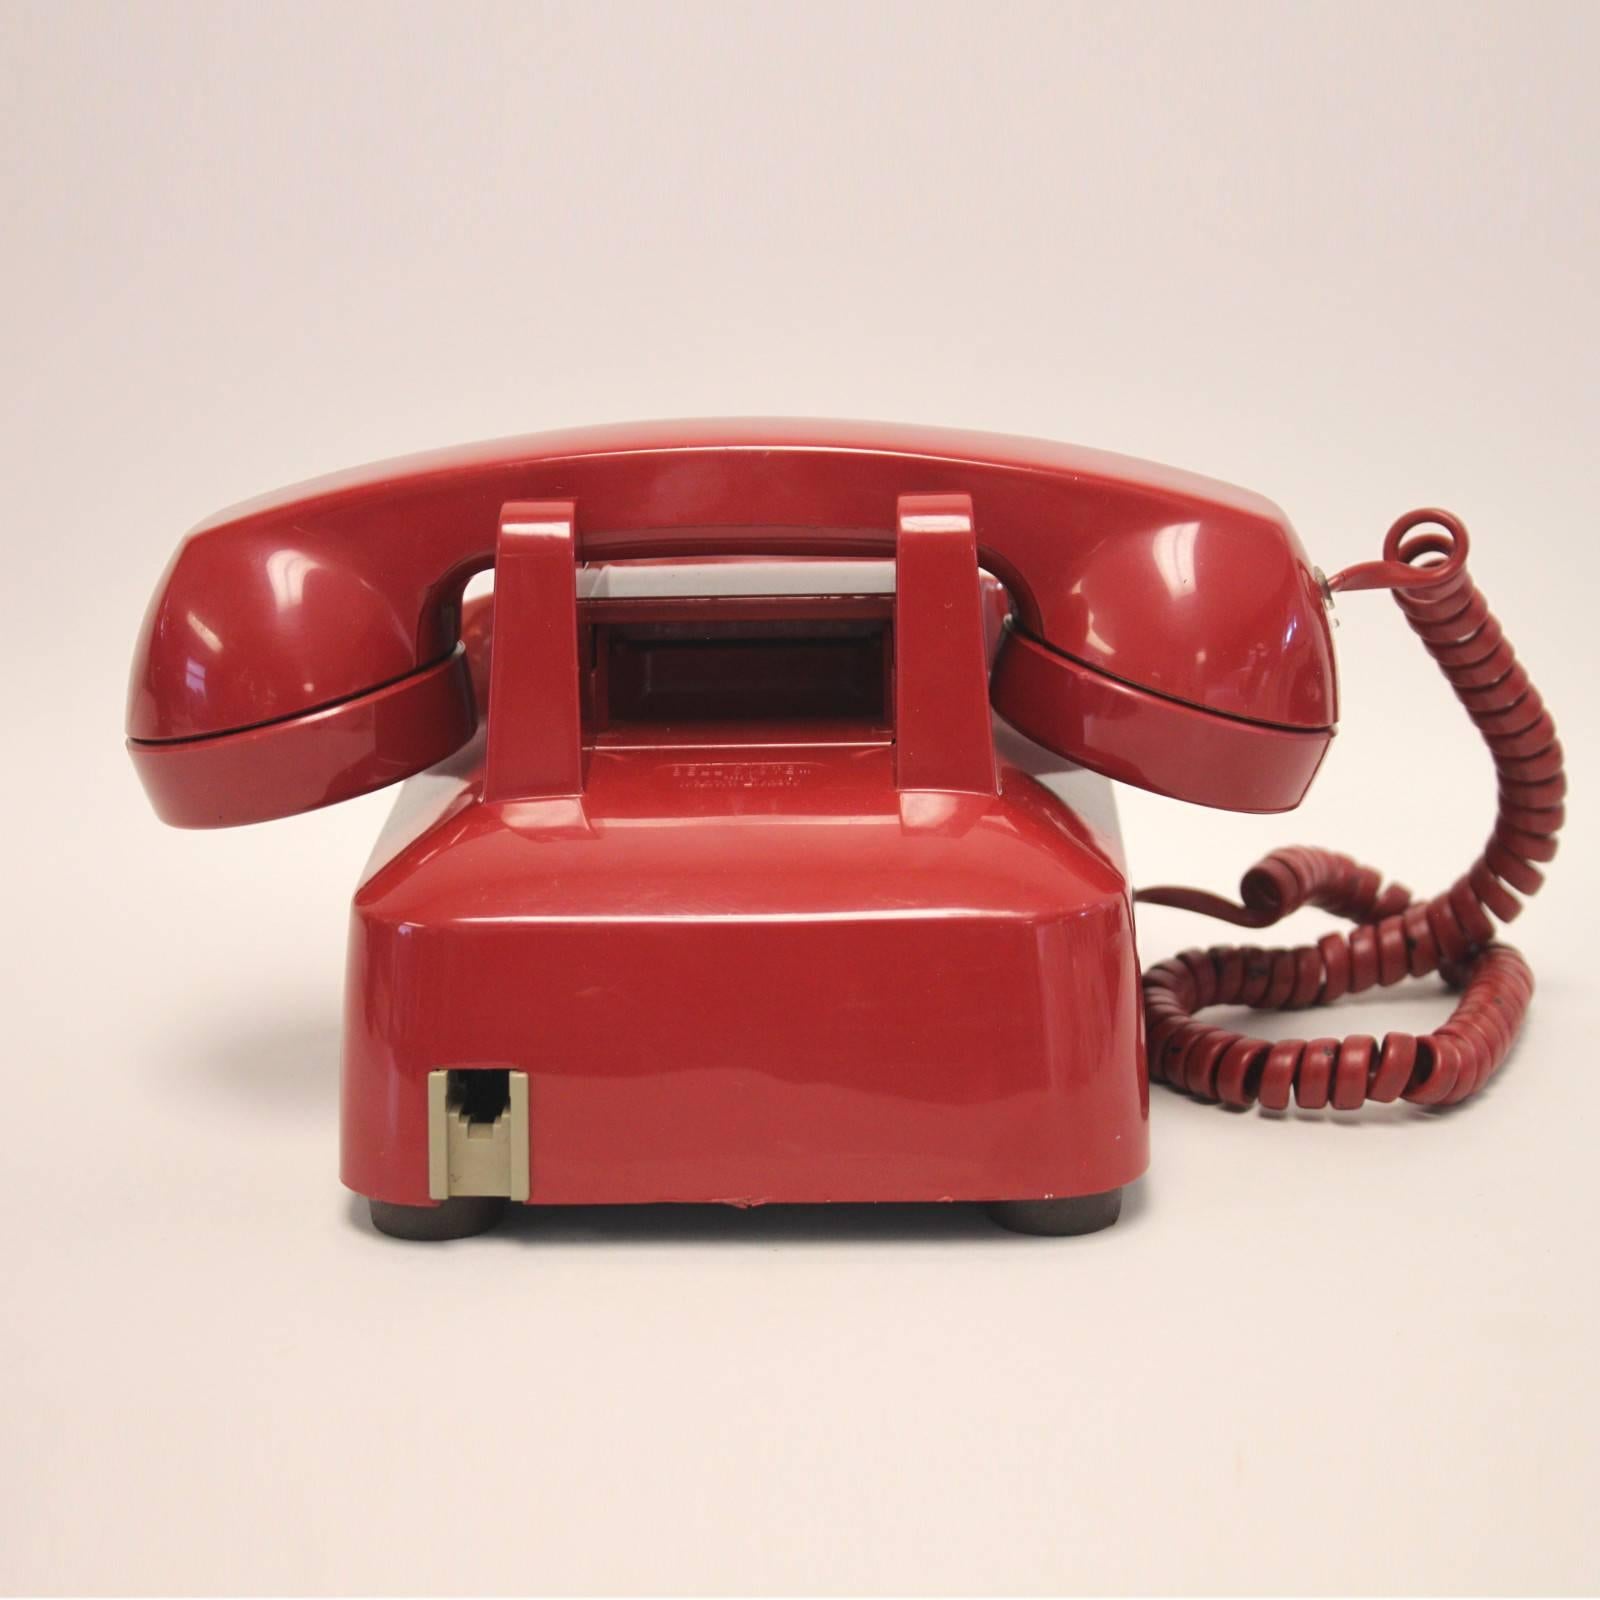 1970s telephone